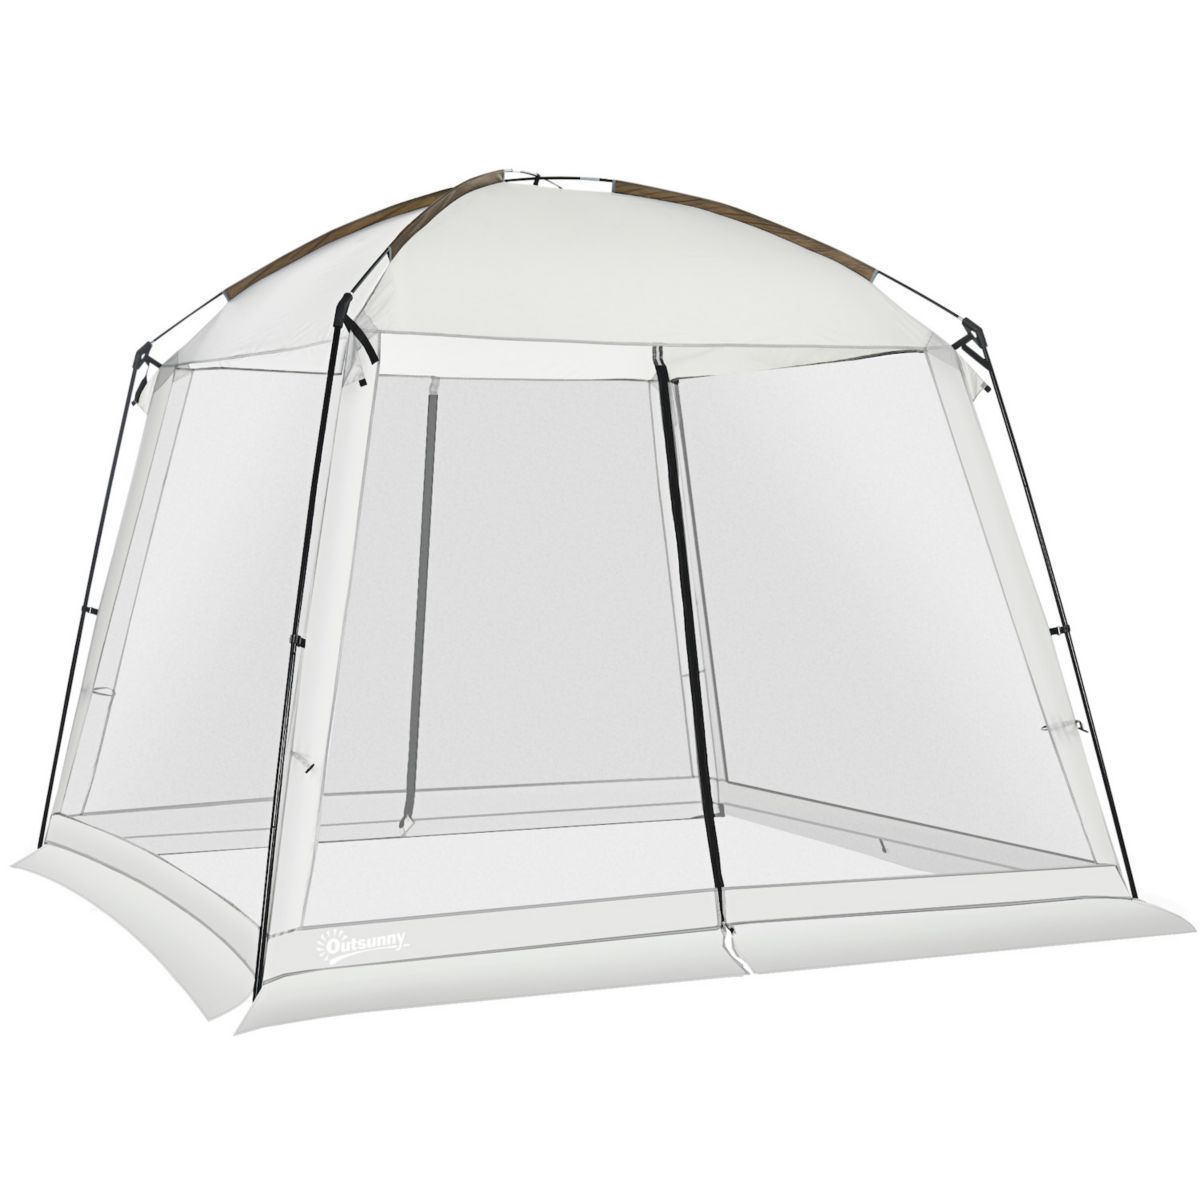 Палатка Screen, комната Screen House размером 10 x 10 футов с защитой от ультрафиолета 50 + Outsunny